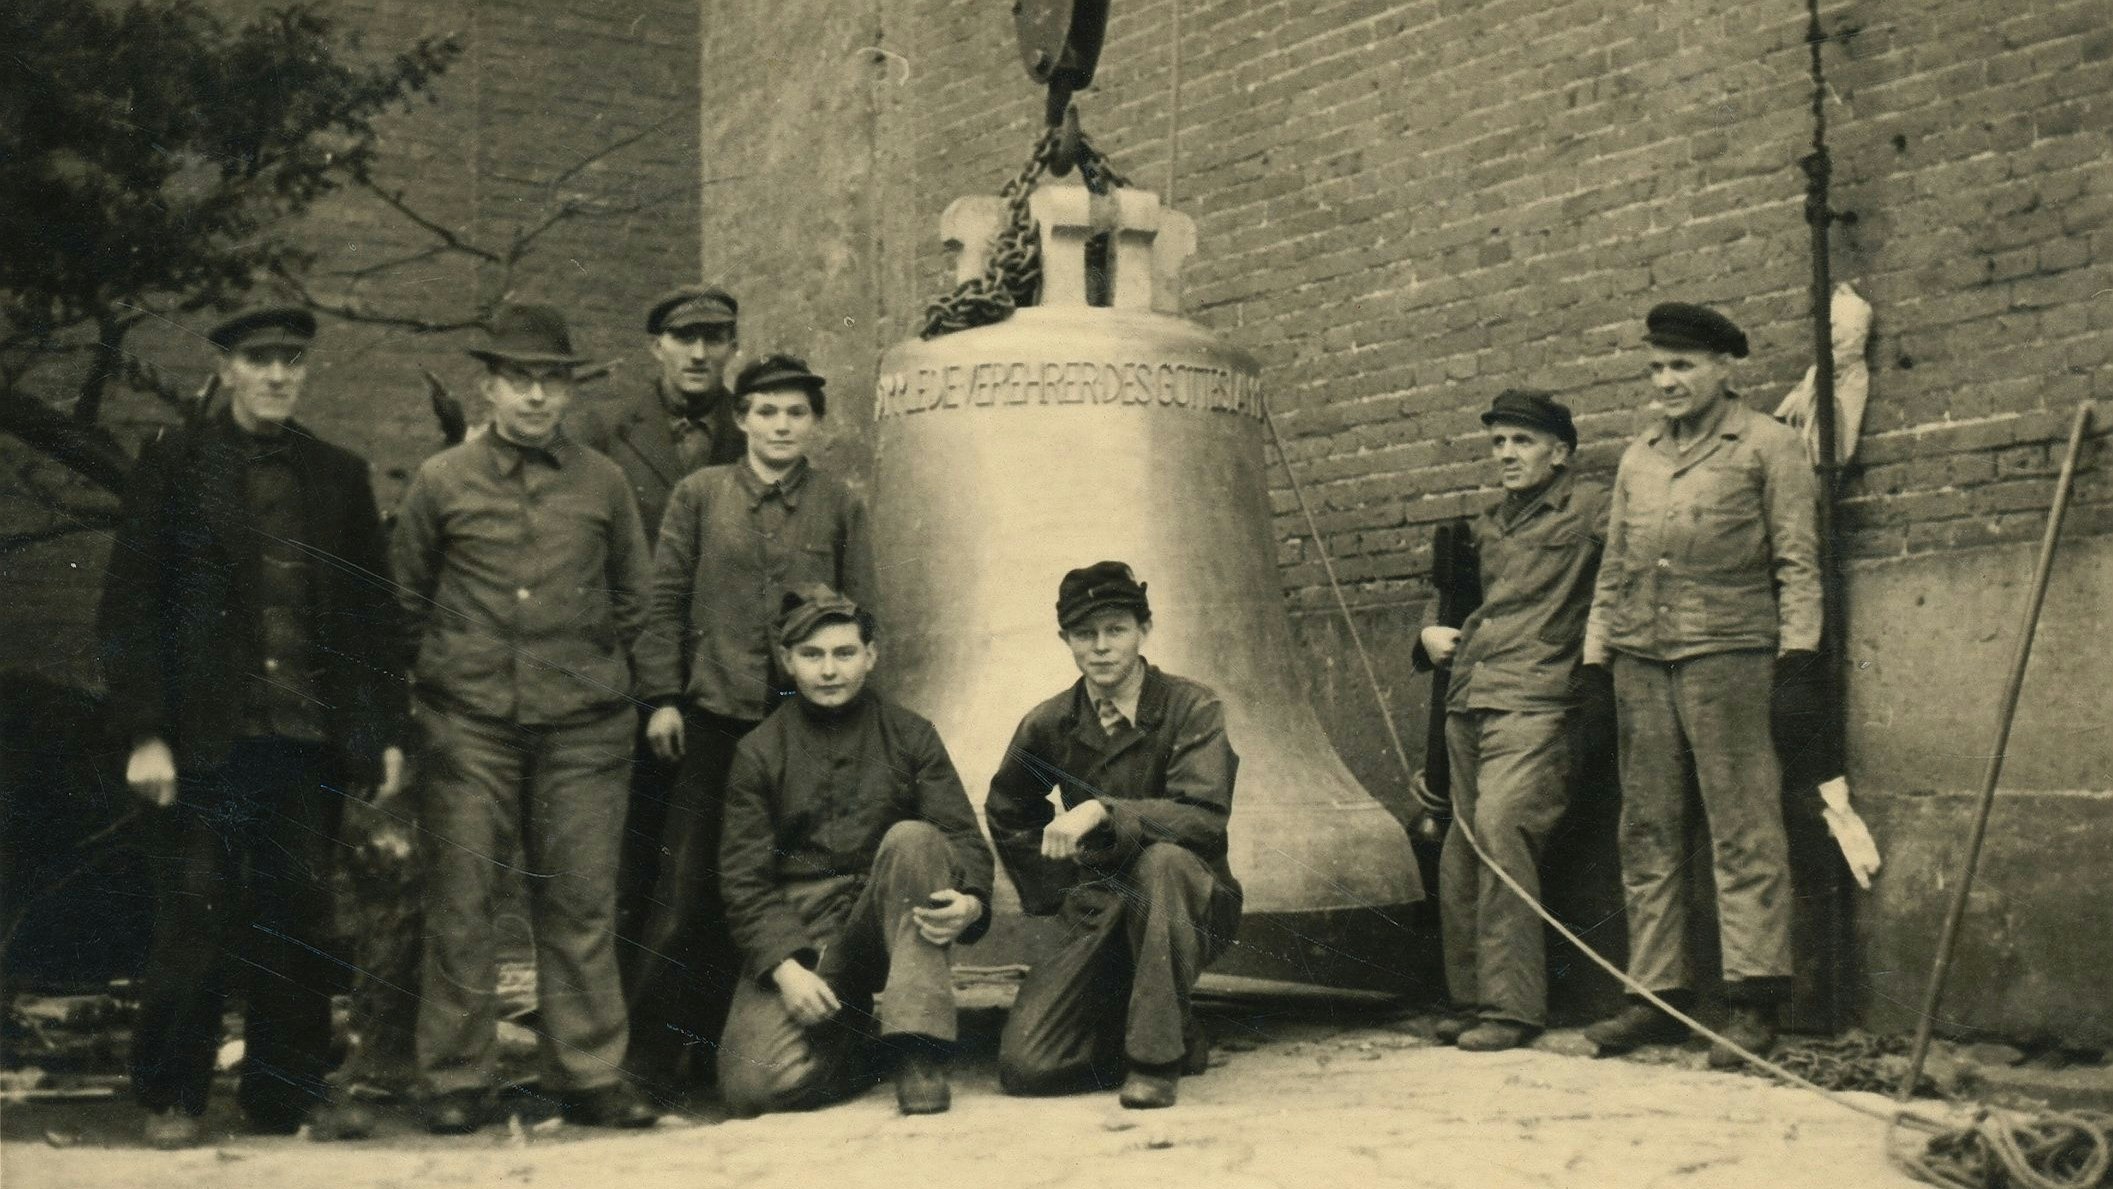 Ein historischer Akt: Diese Aufnahme entstand während der Installation der neuen Glocken für die Kirche St. Gertrud im Jahr 1949. Es handelt sich um die B-Glocke "Gertrud", an der die Männer stehen. Foto: Stadtmedienarchiv im Heimatverein Lohne